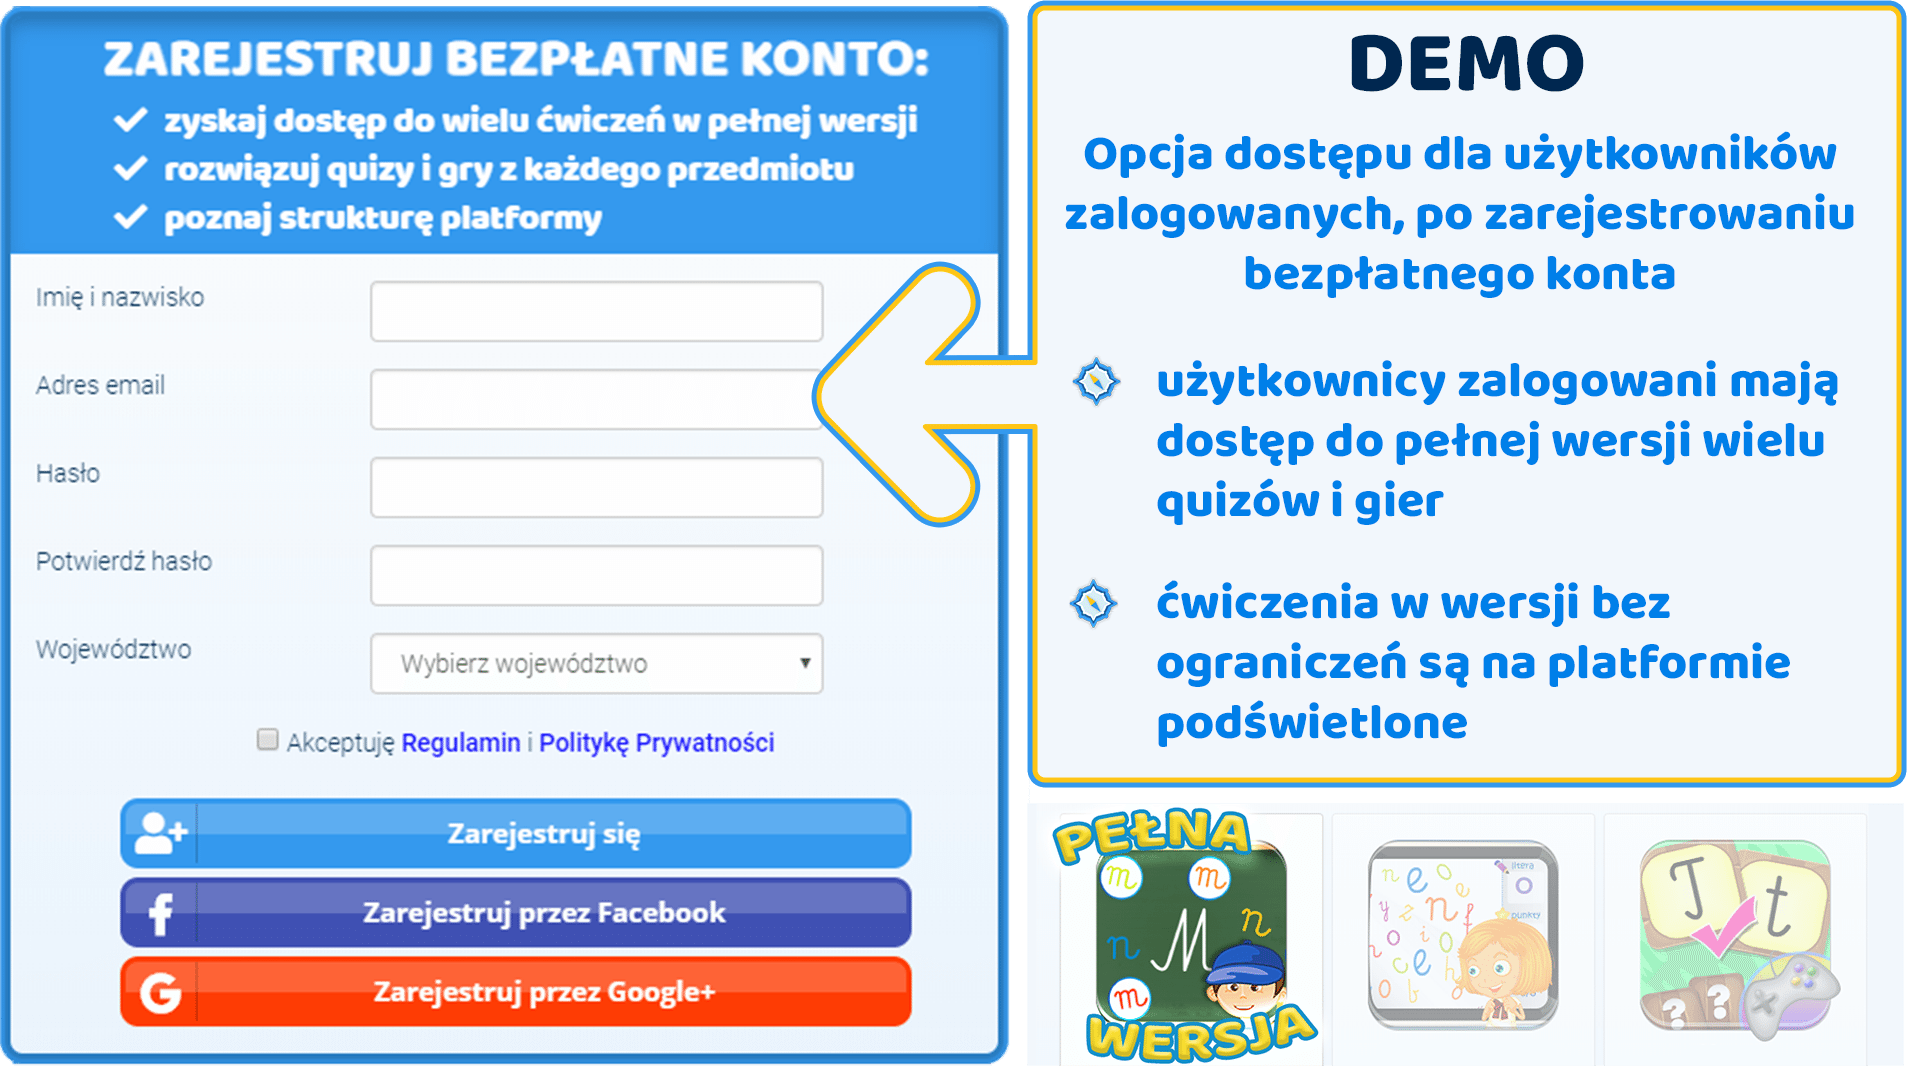 Obraz przedstawiający możliwości korzystania z platformy ZdobywcyWiedzy.pl przez użytkownika po zarejestrowaniu bezpłatnego konta